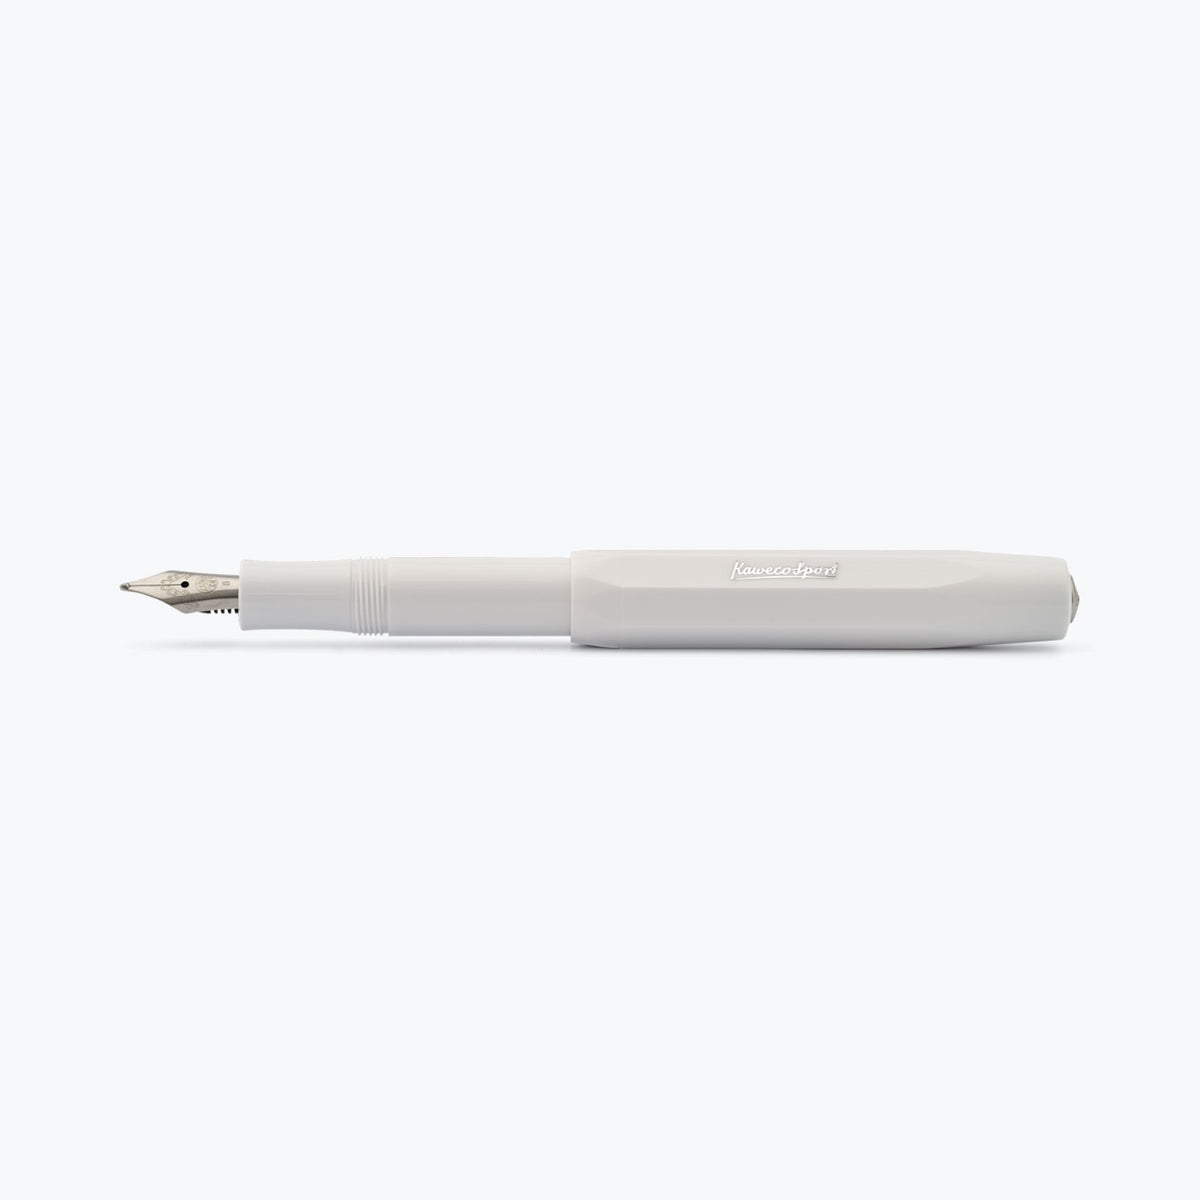 Kaweco - Fountain Pen - Skyline Sport - White <Outgoing>